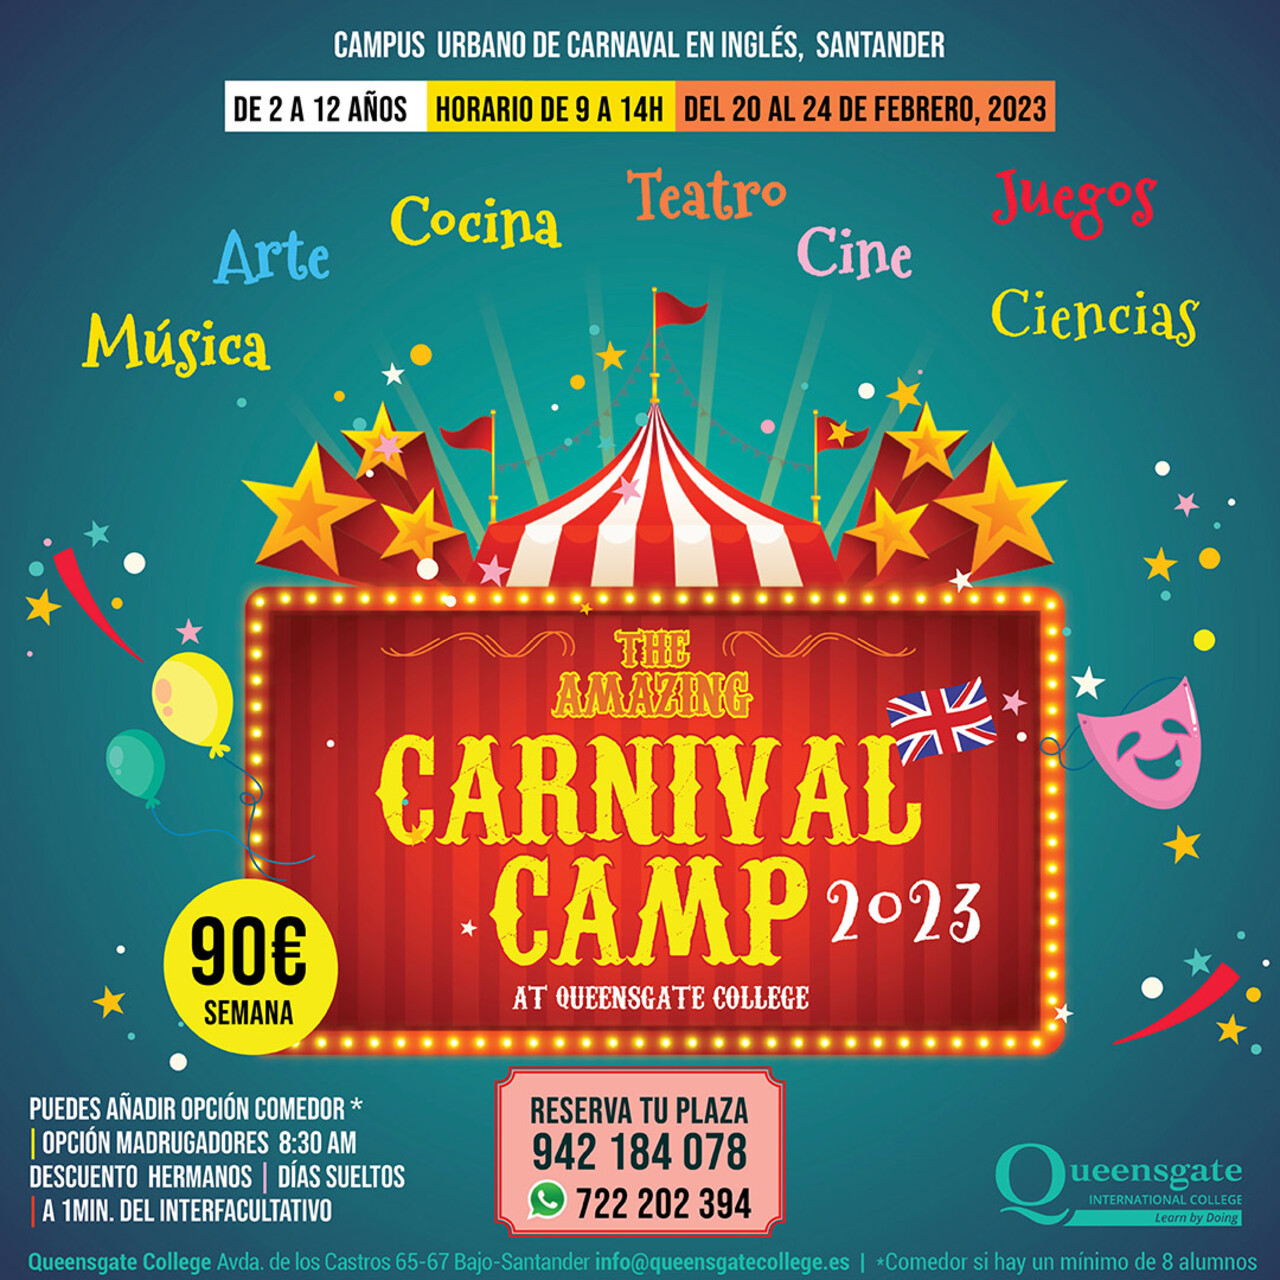 Carnival Camp 2023